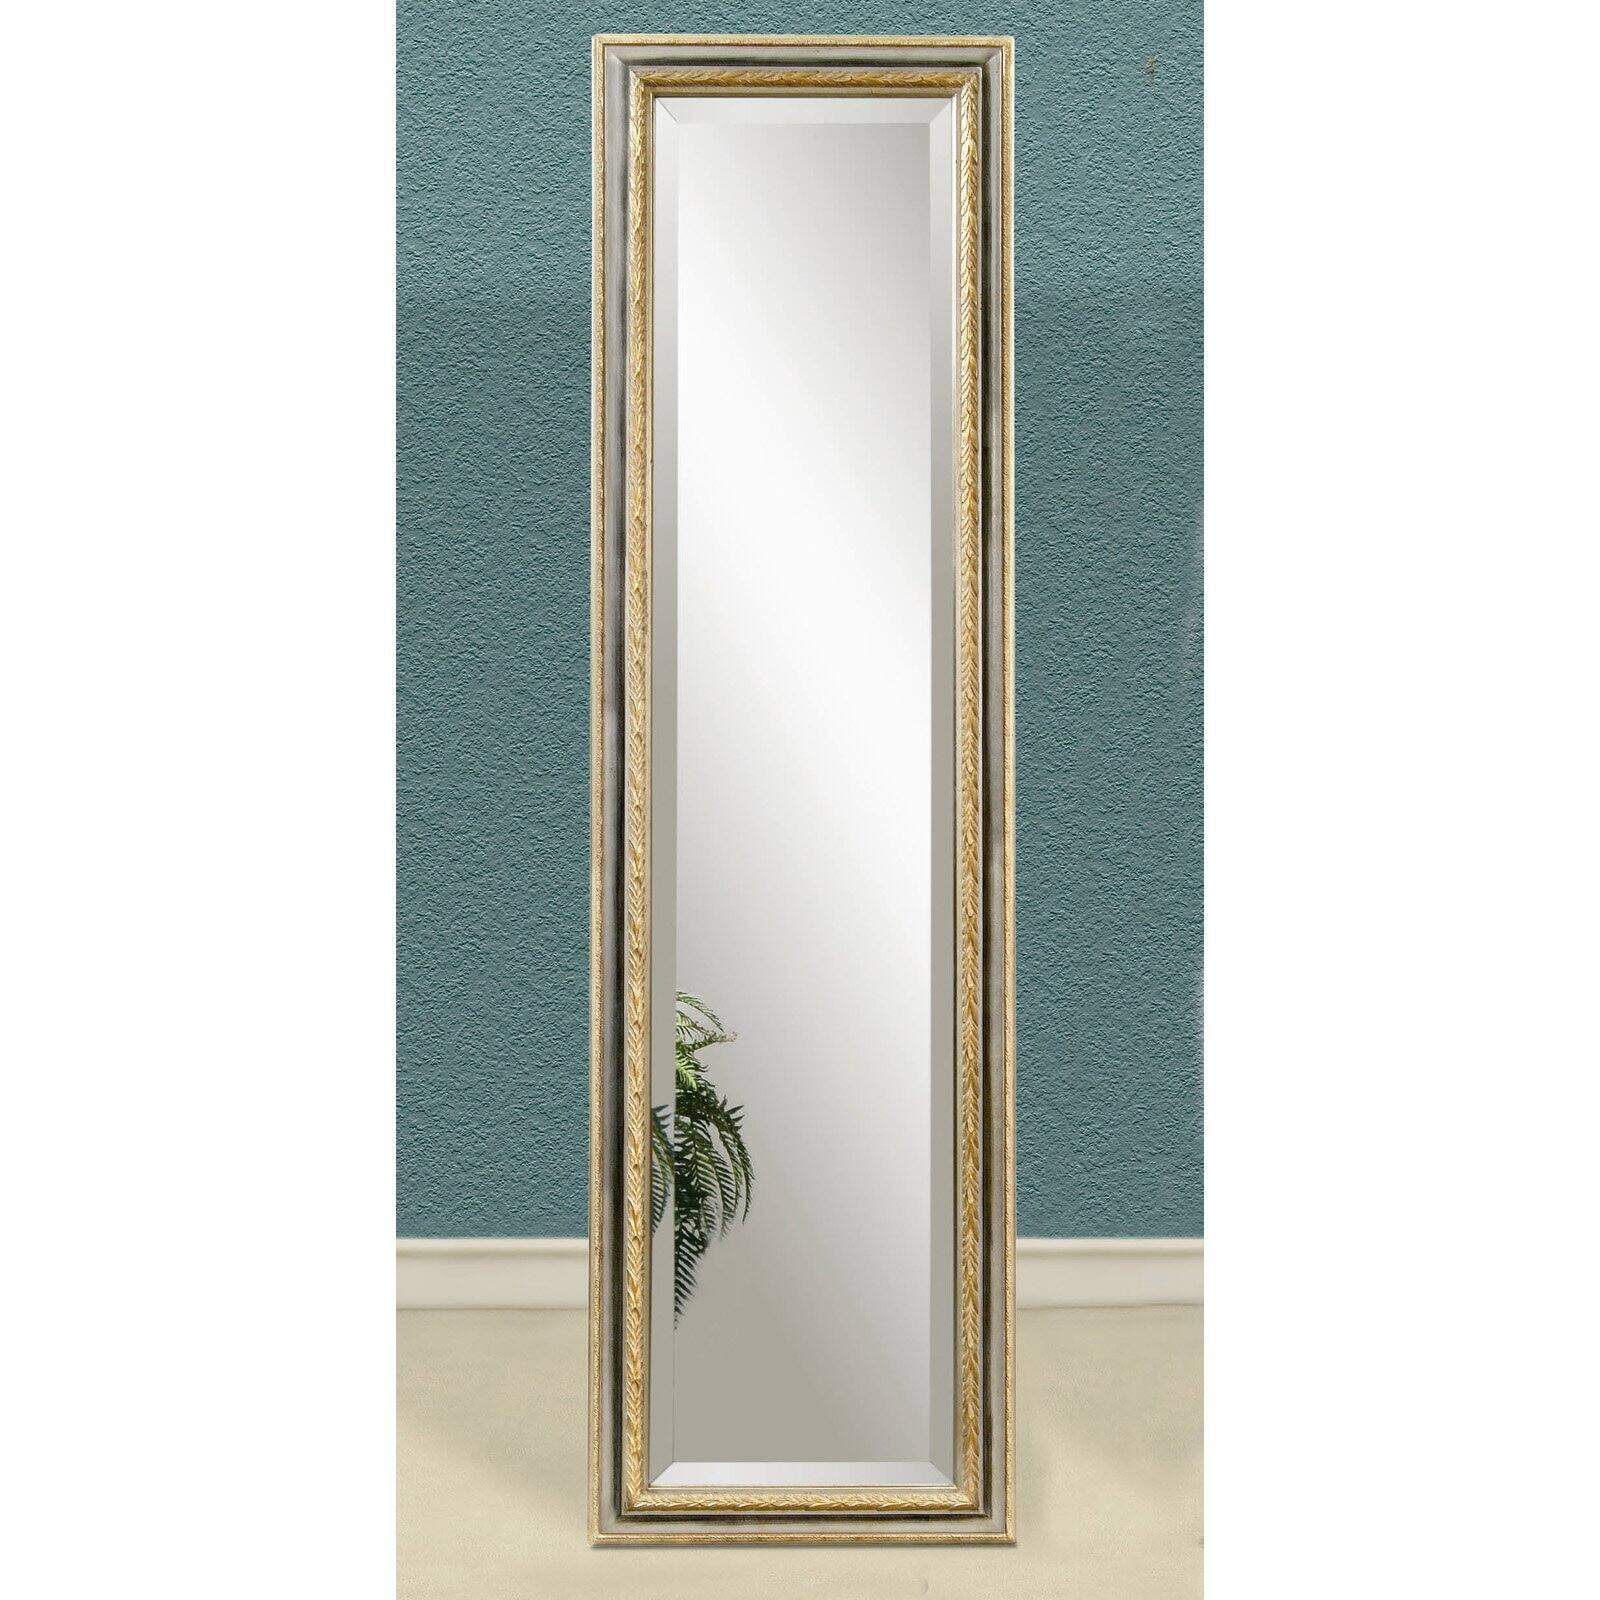 Gold Full Length Cheval Floor Mirror, Gold Ornate Full Length Floor Mirror